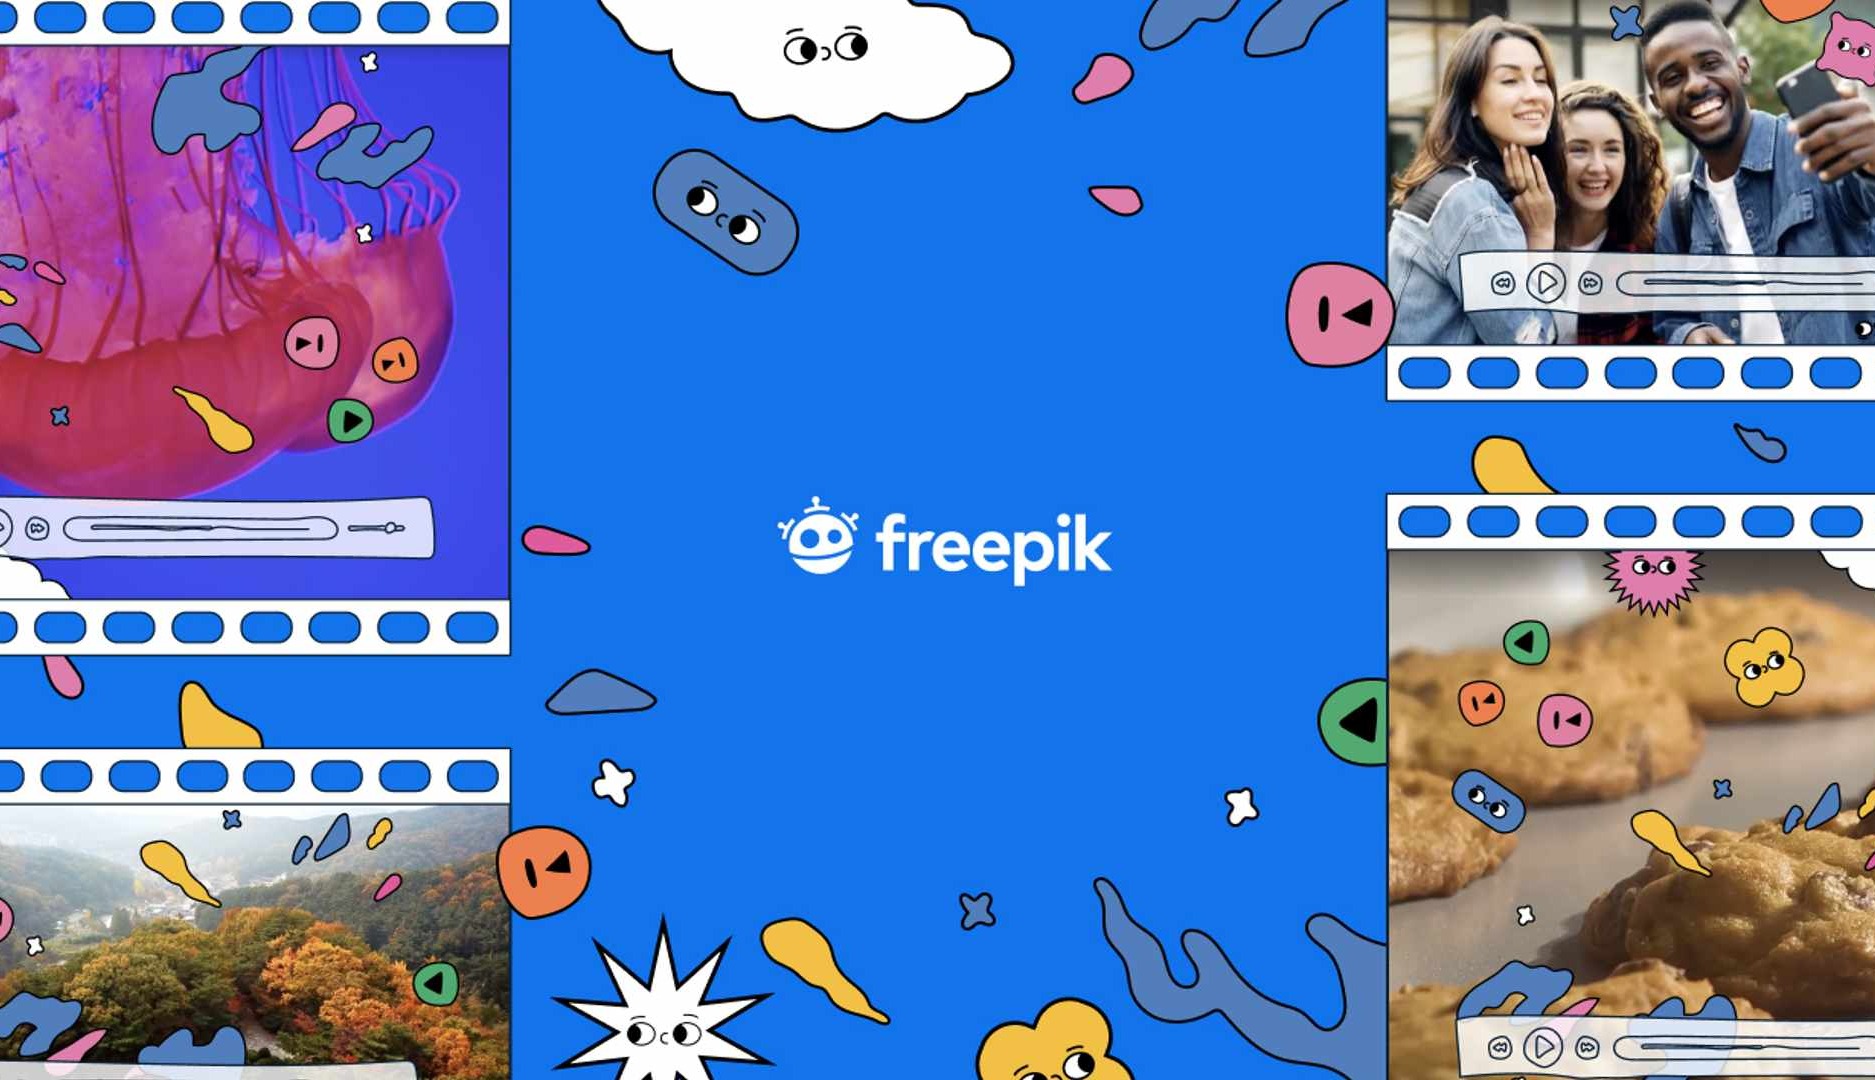 Freepik incorpora el formato vídeo a su oferta de recursos audiovisuales